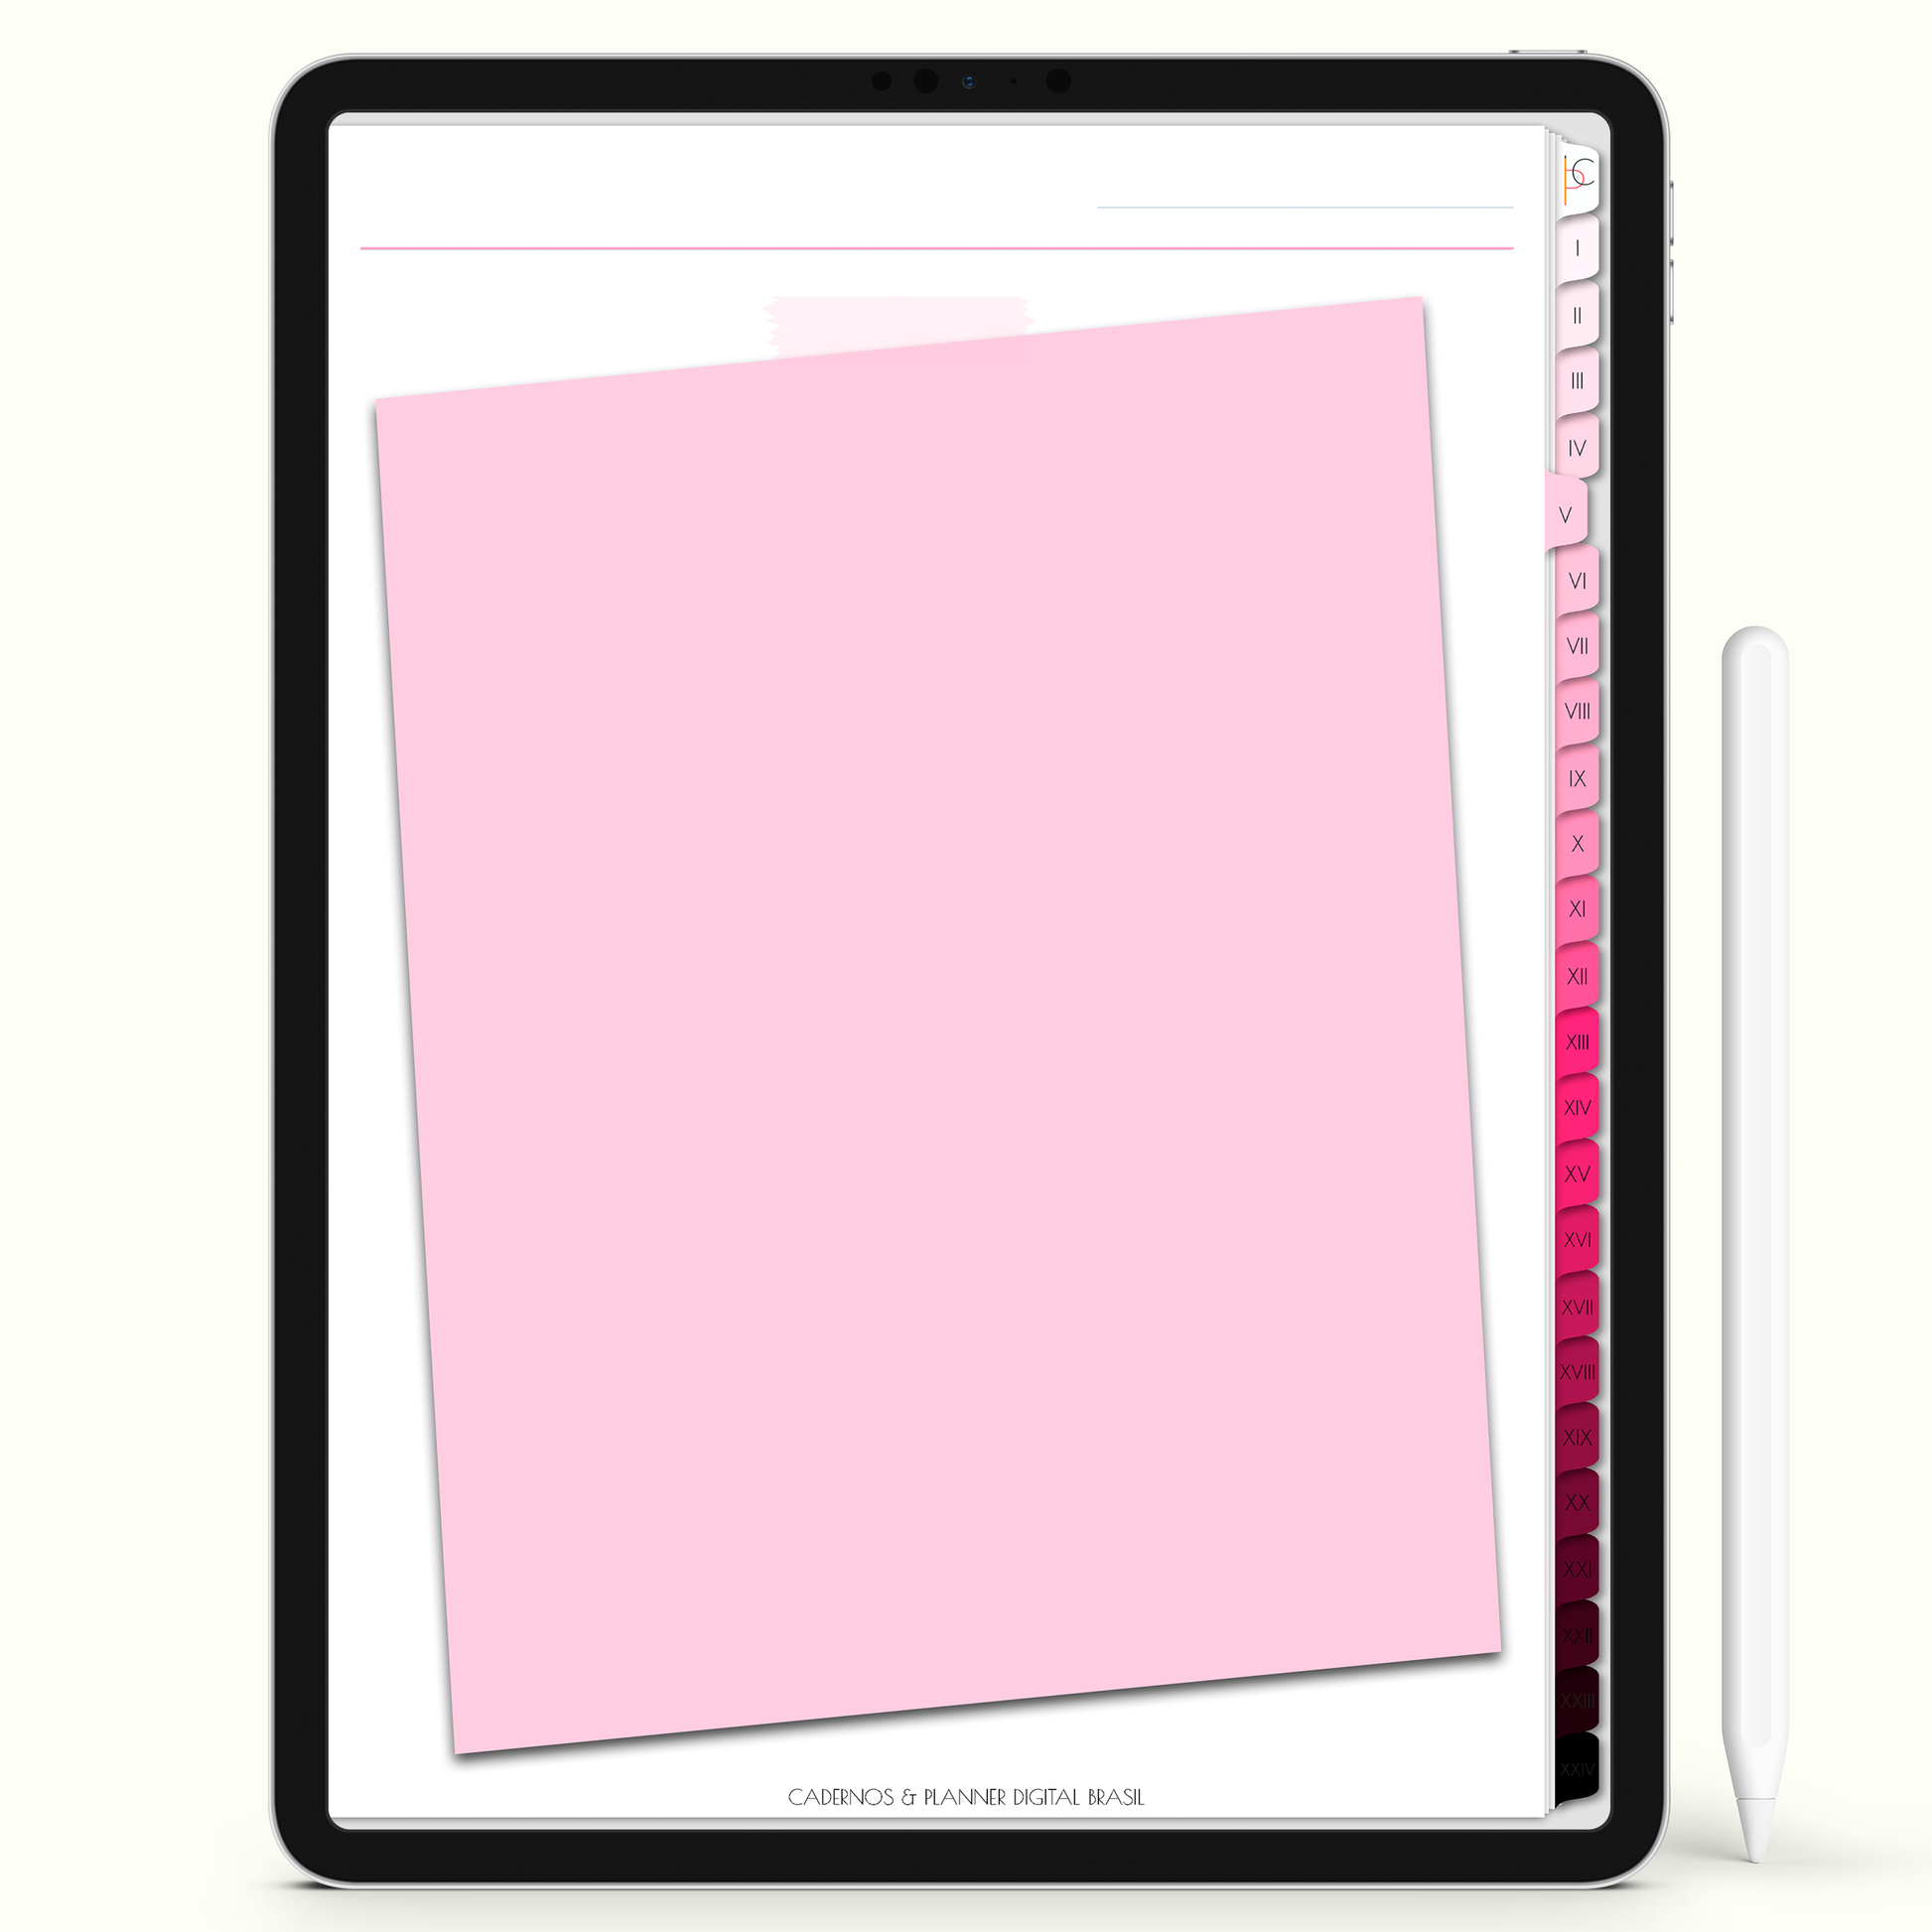 Caderno Digital Blush 24 Matérias - Quadro de Avisos do Caderno Digital para iPad e Tablet Android. Cadernos & Planner Digital Brasil